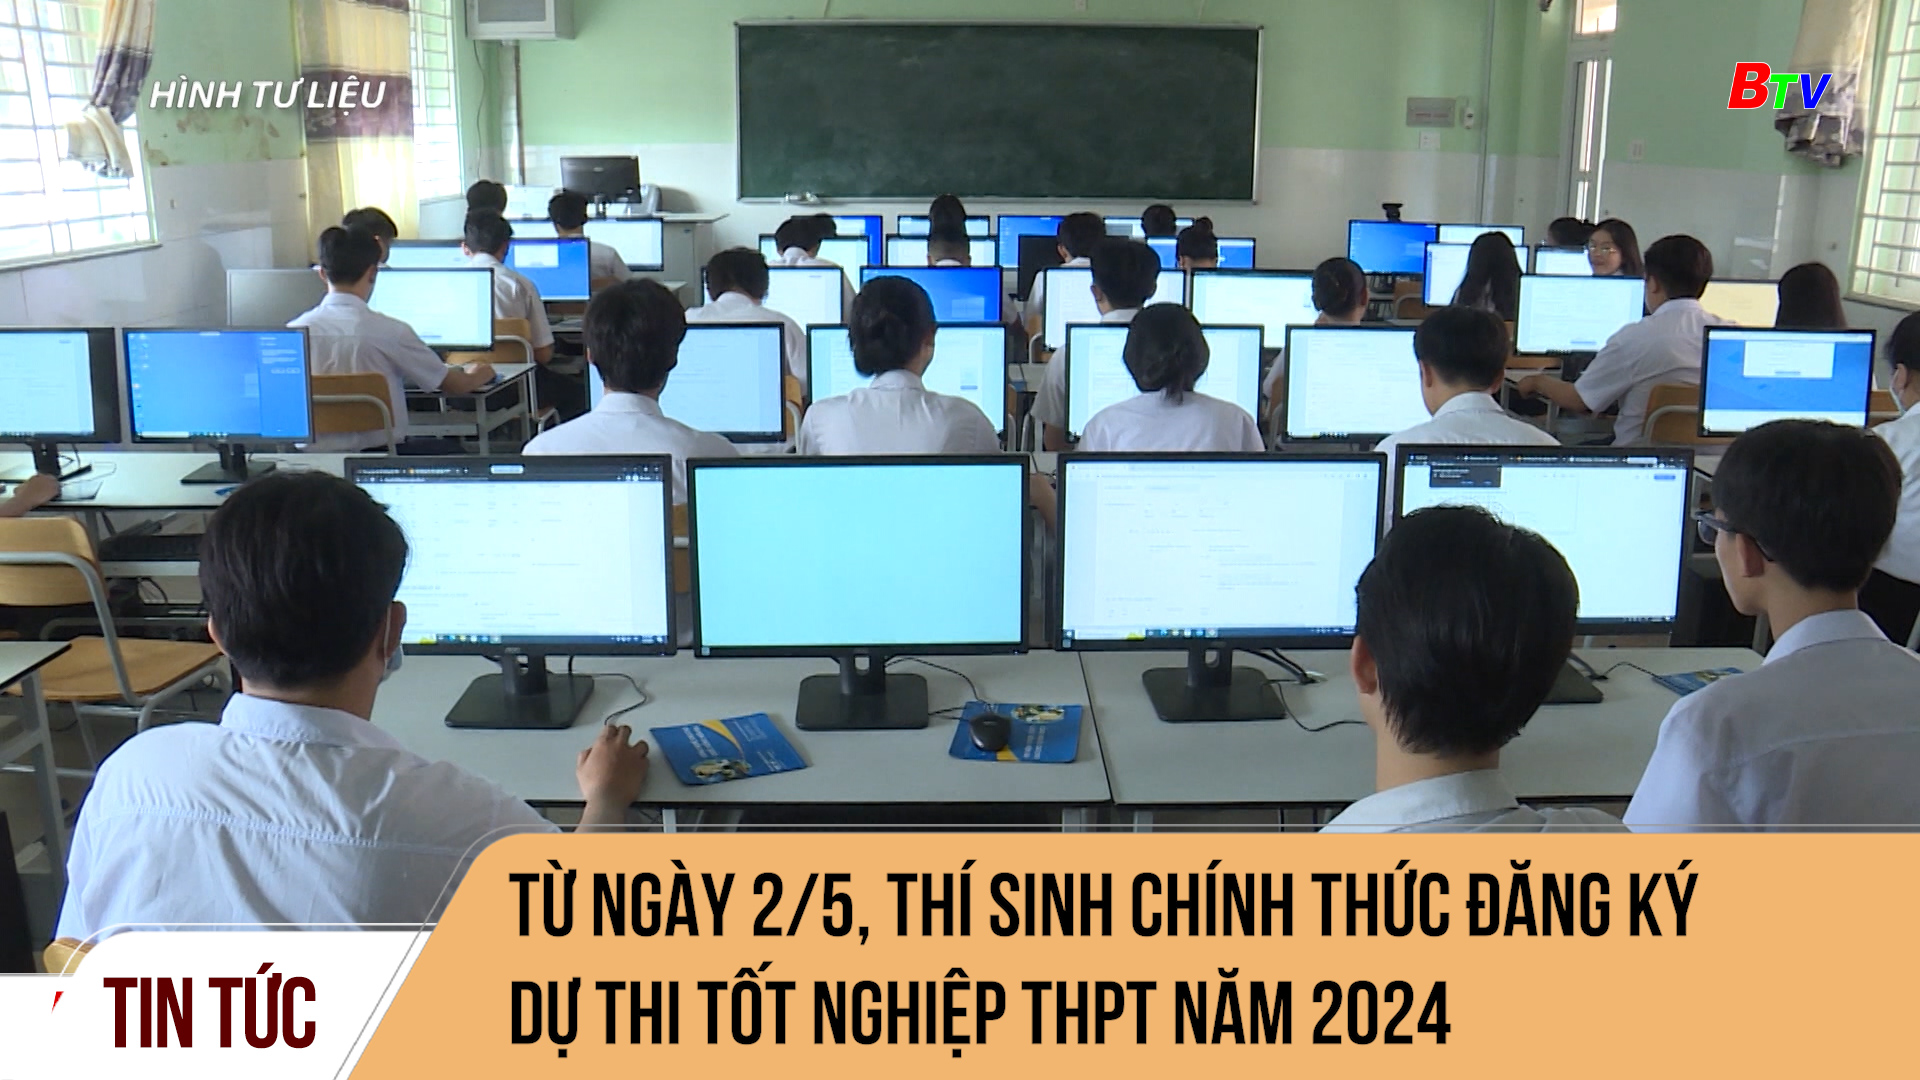 Từ ngày 2/5, thí sinh chính thức đăng ký dự thi tốt nghiệp THPT năm 2024